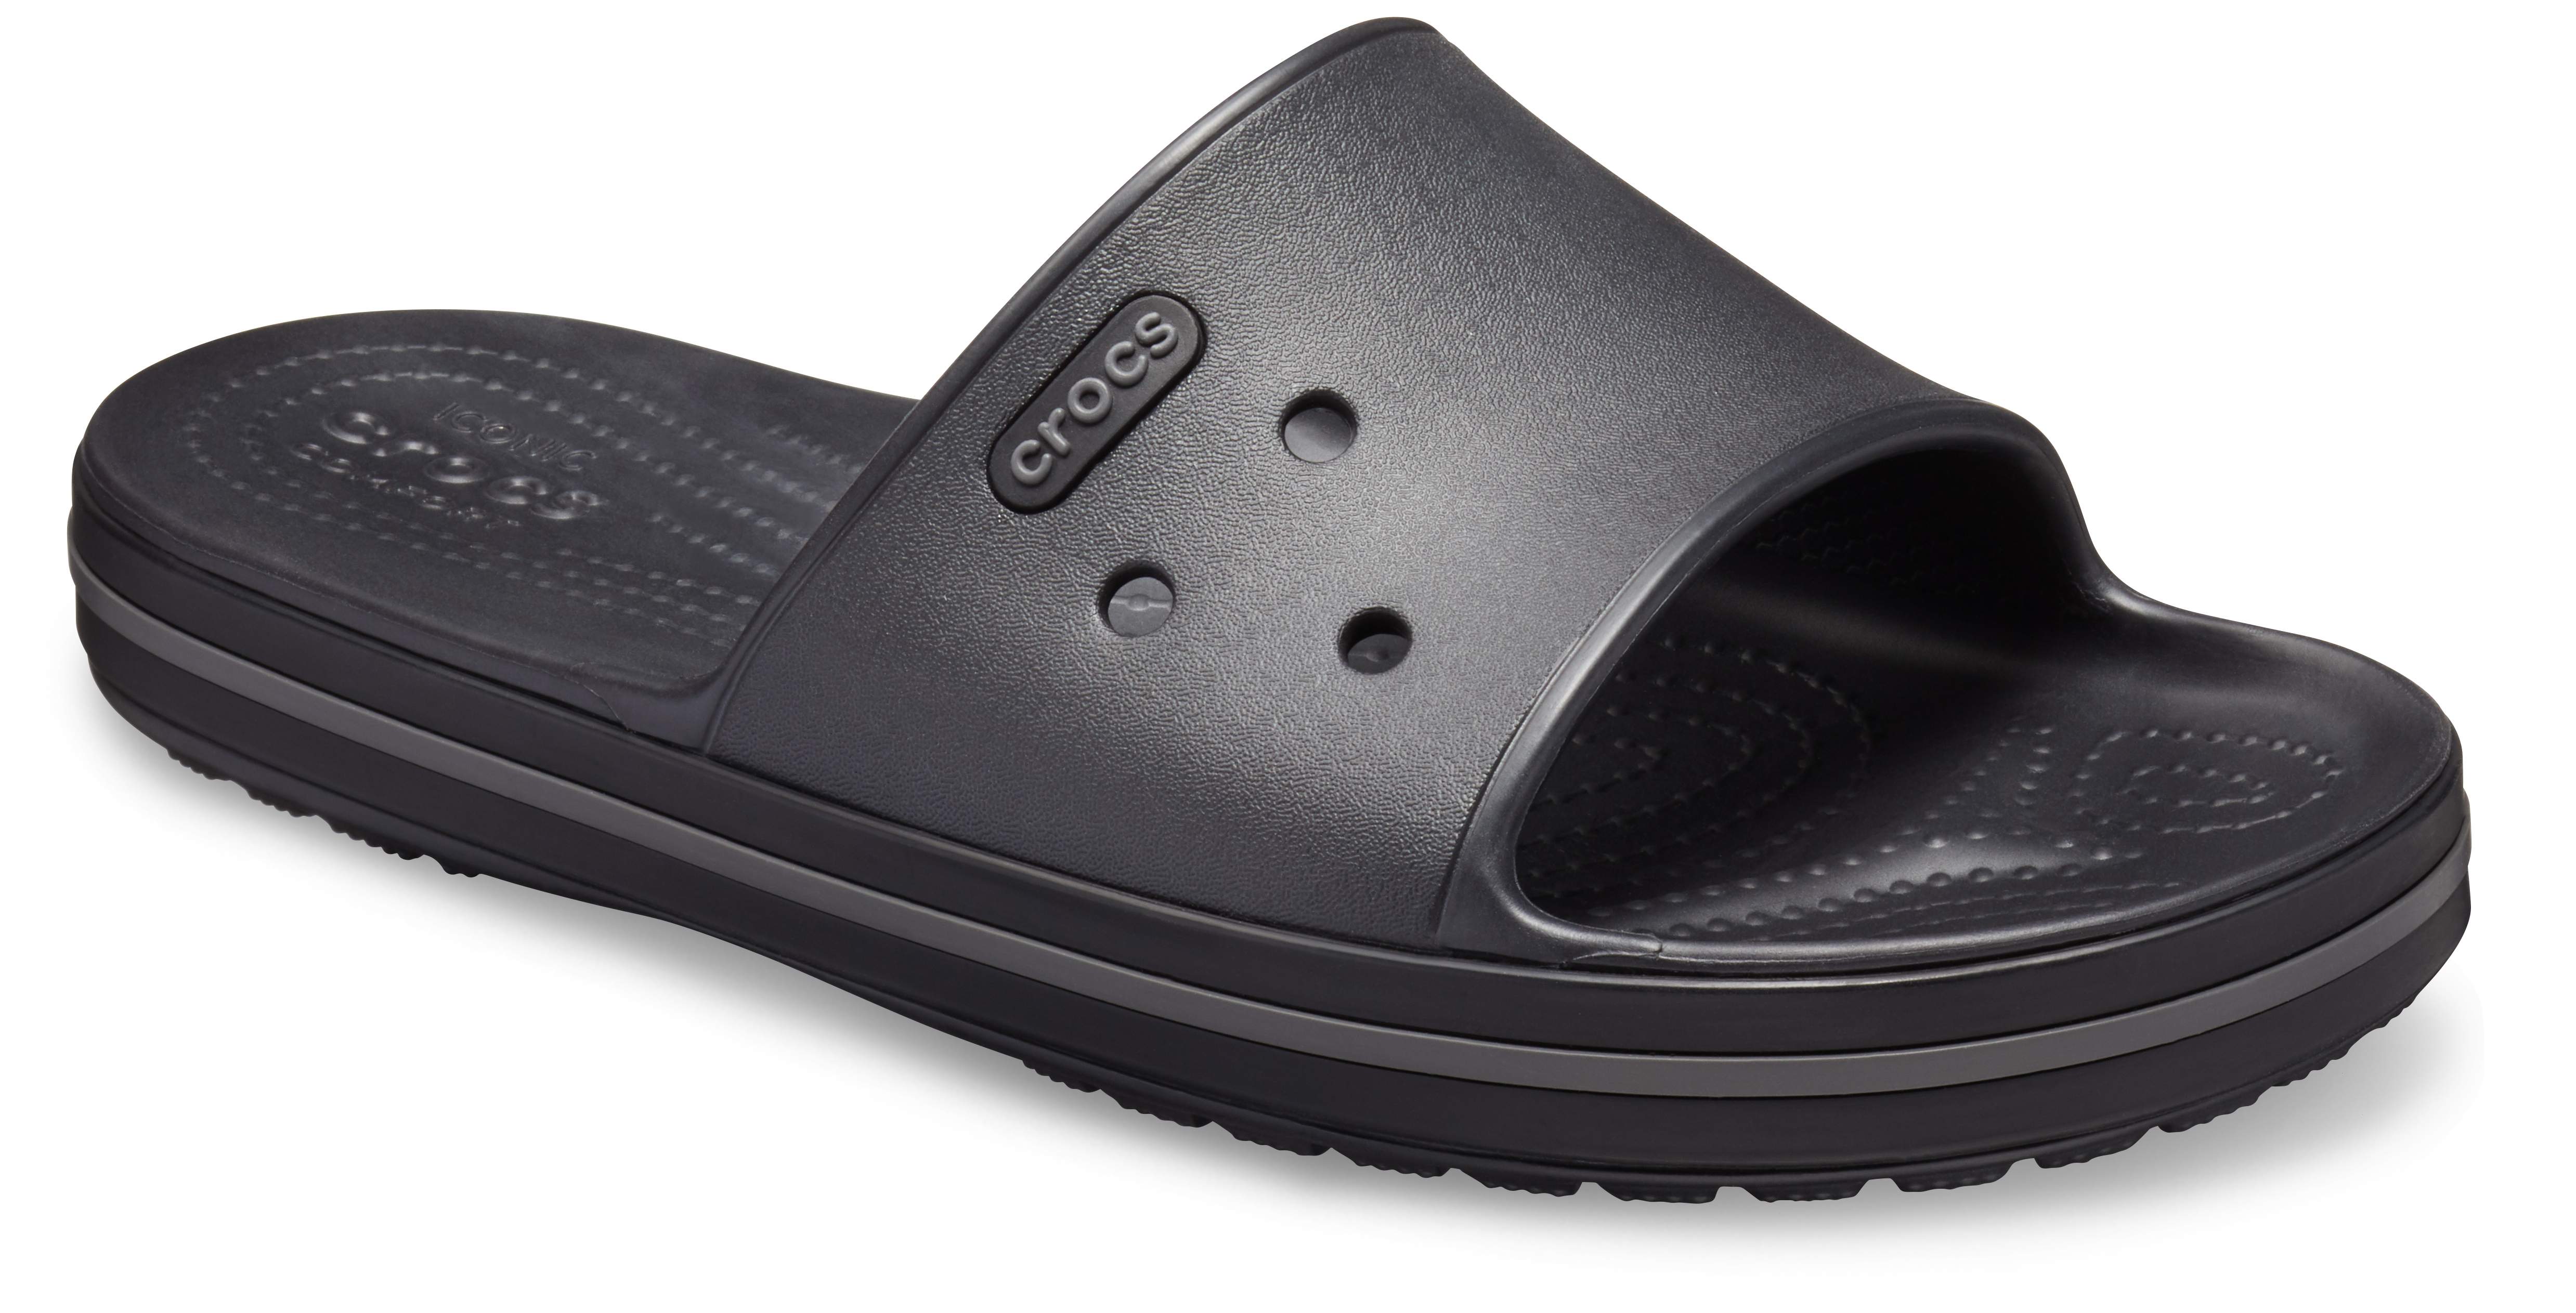 crocs crocband slippers